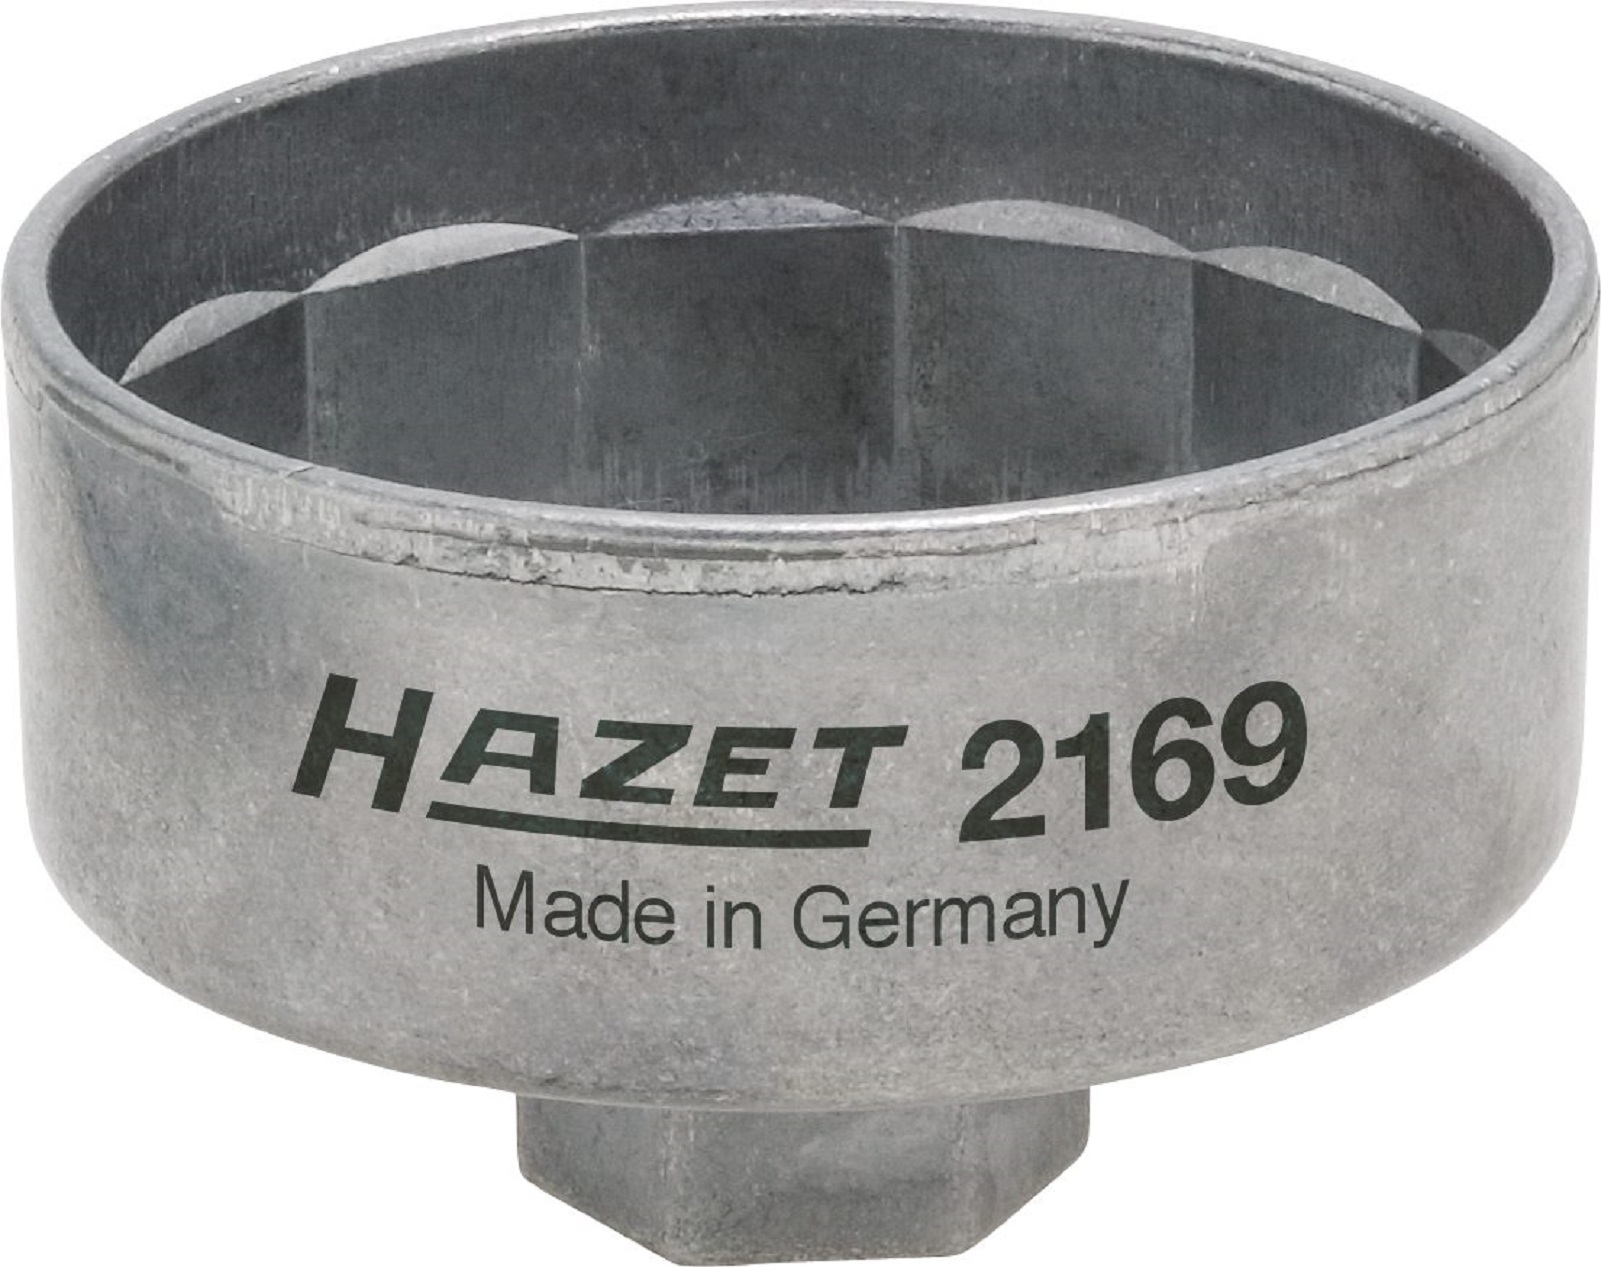 Hazet 2169-1 Ölfilterschlüssel 92 Mm for sale online